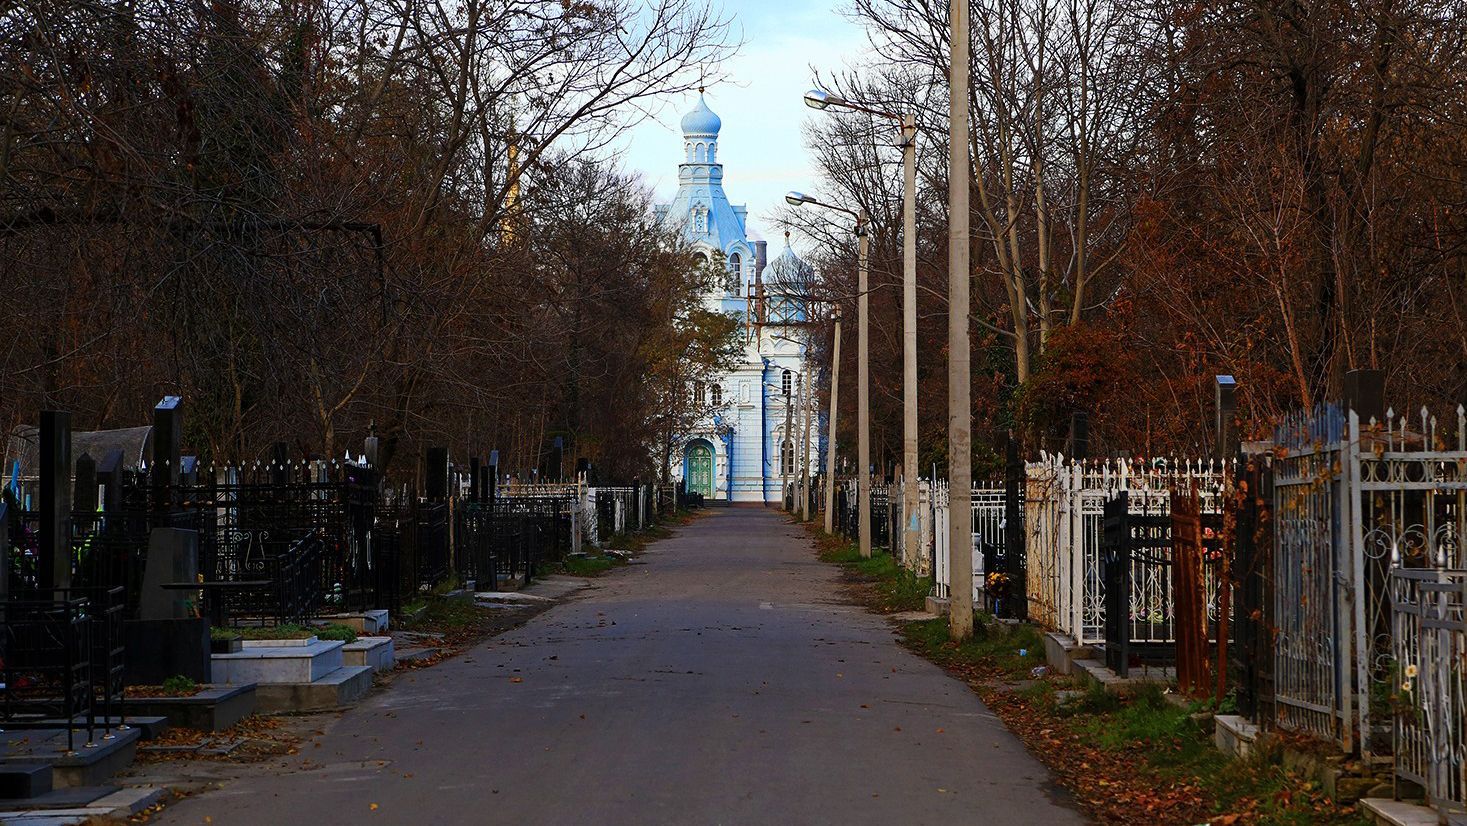 Хотел убедиться, что умер: мужчина в Одесской области раскопал могилу экс-начальника